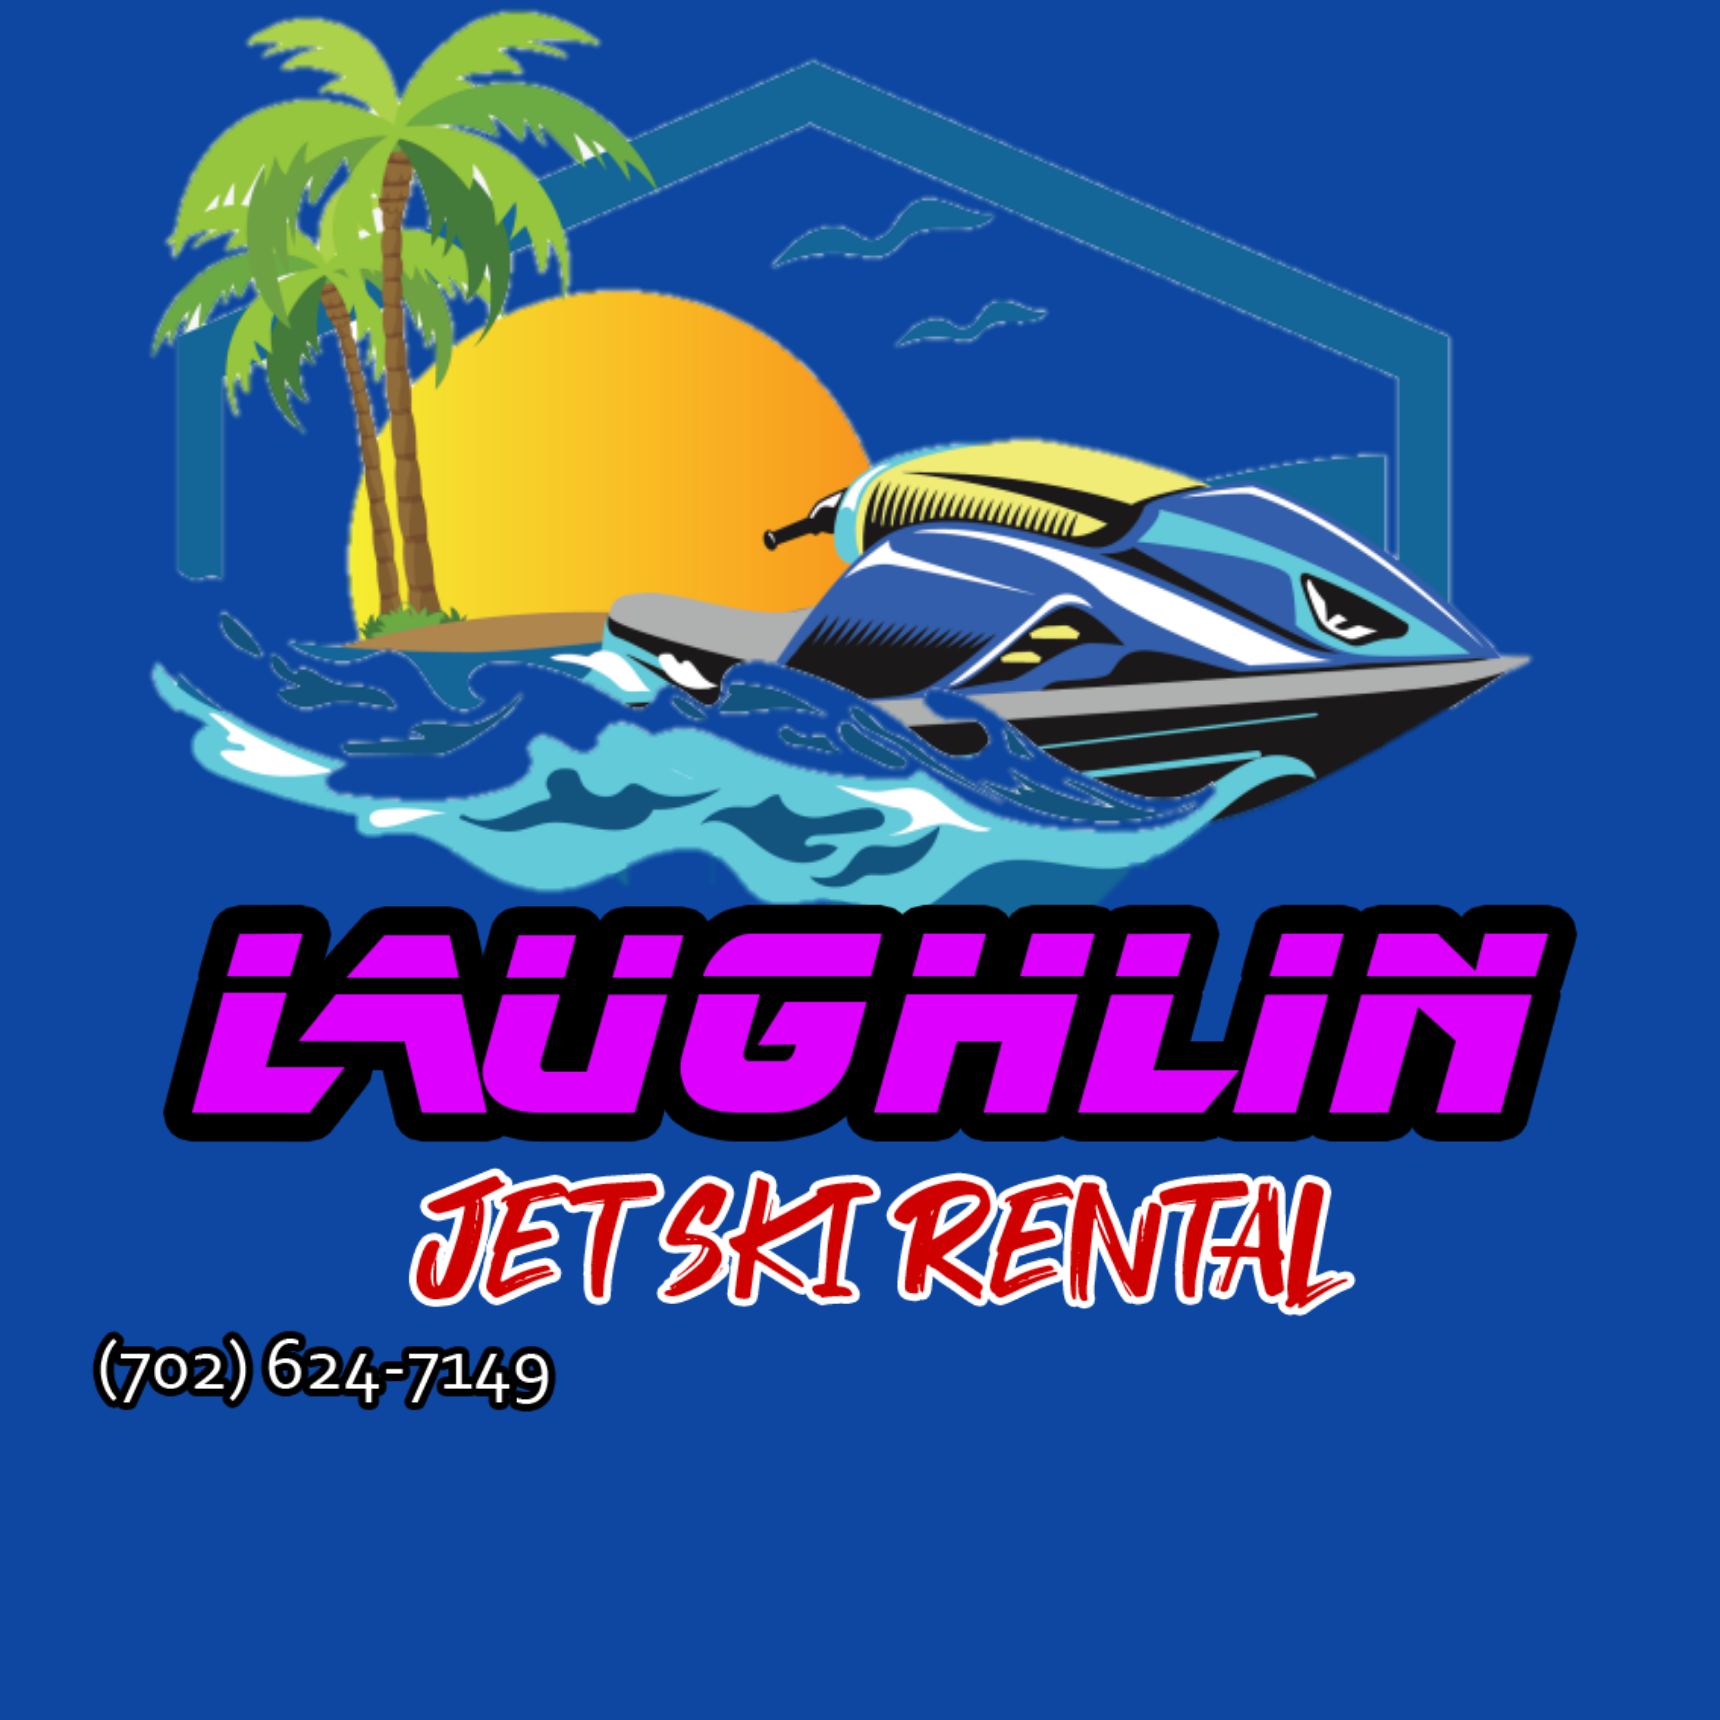 Laughlin Jet Ski LLC